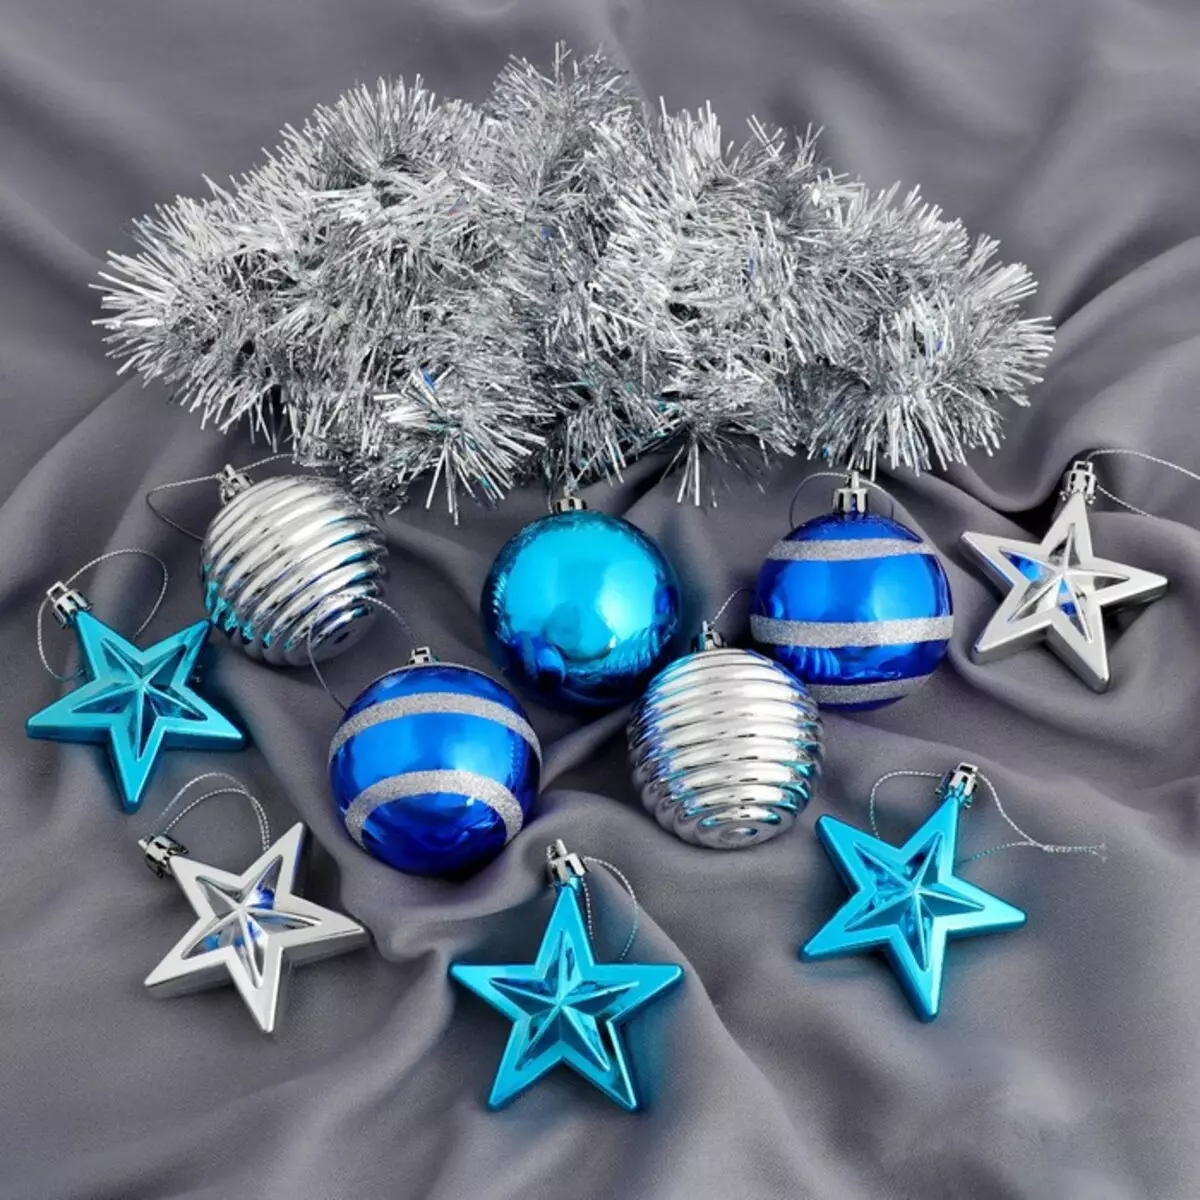 Làm thế nào để trang trí cây Giáng sinh màu xanh lam? 30 ảnh Làm thế nào để ăn mặc với những quả bóng và các trang trí khác trong tông màu xanh và bạc? 7627_20